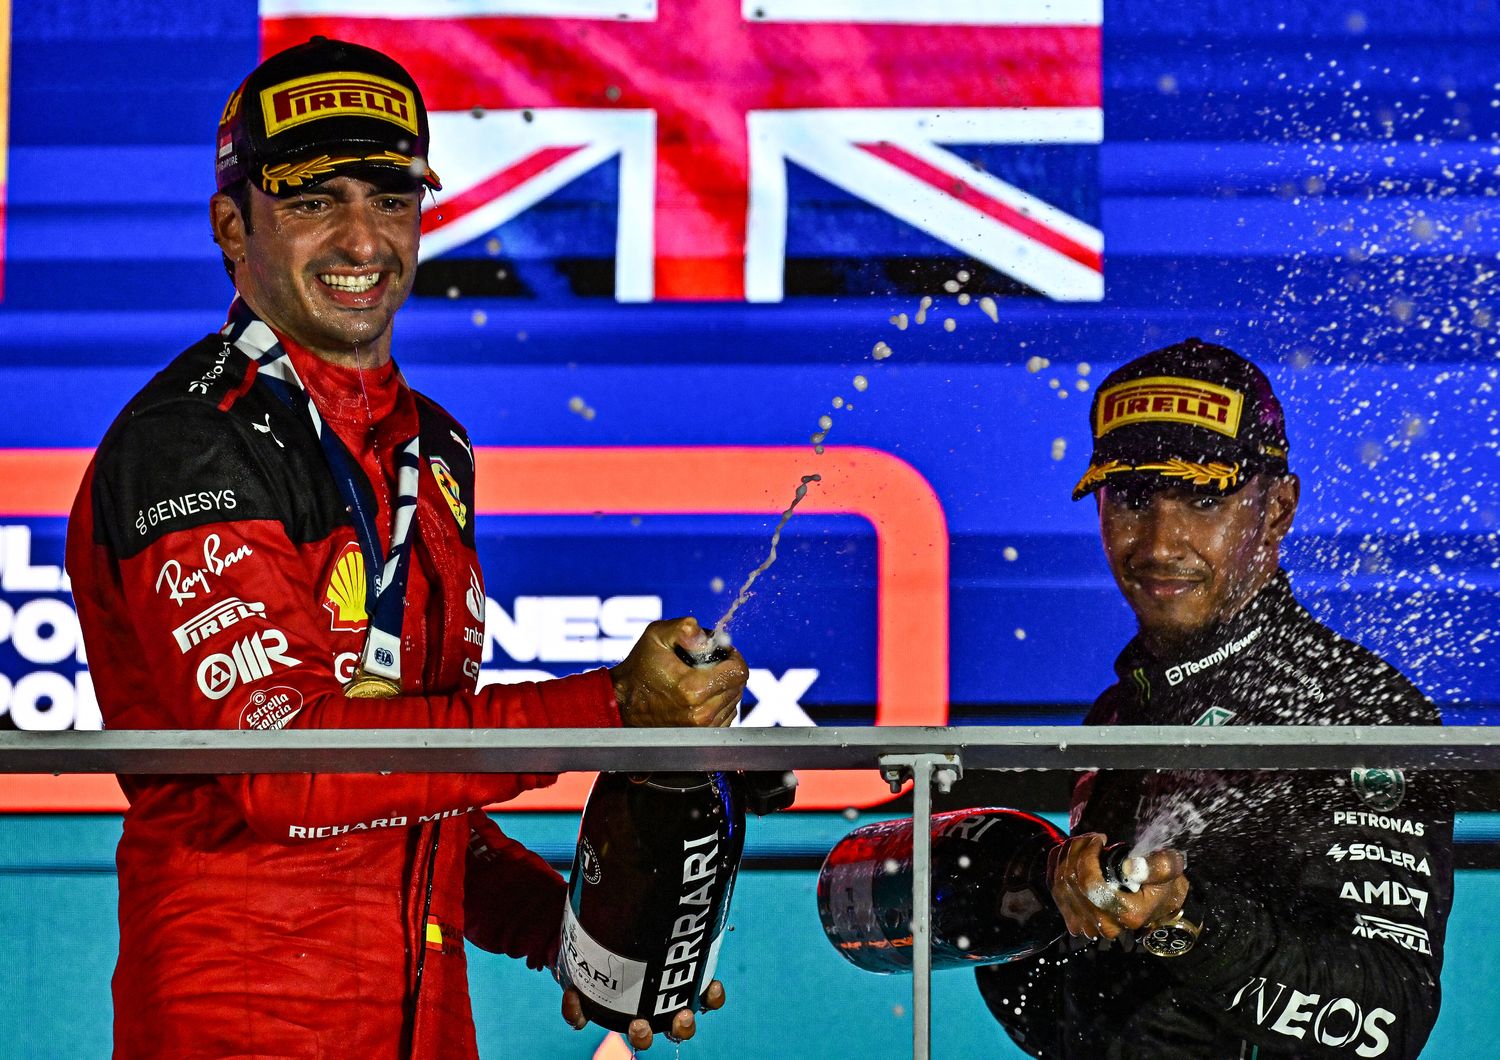 La Ferrari vince al Gp di Singapore